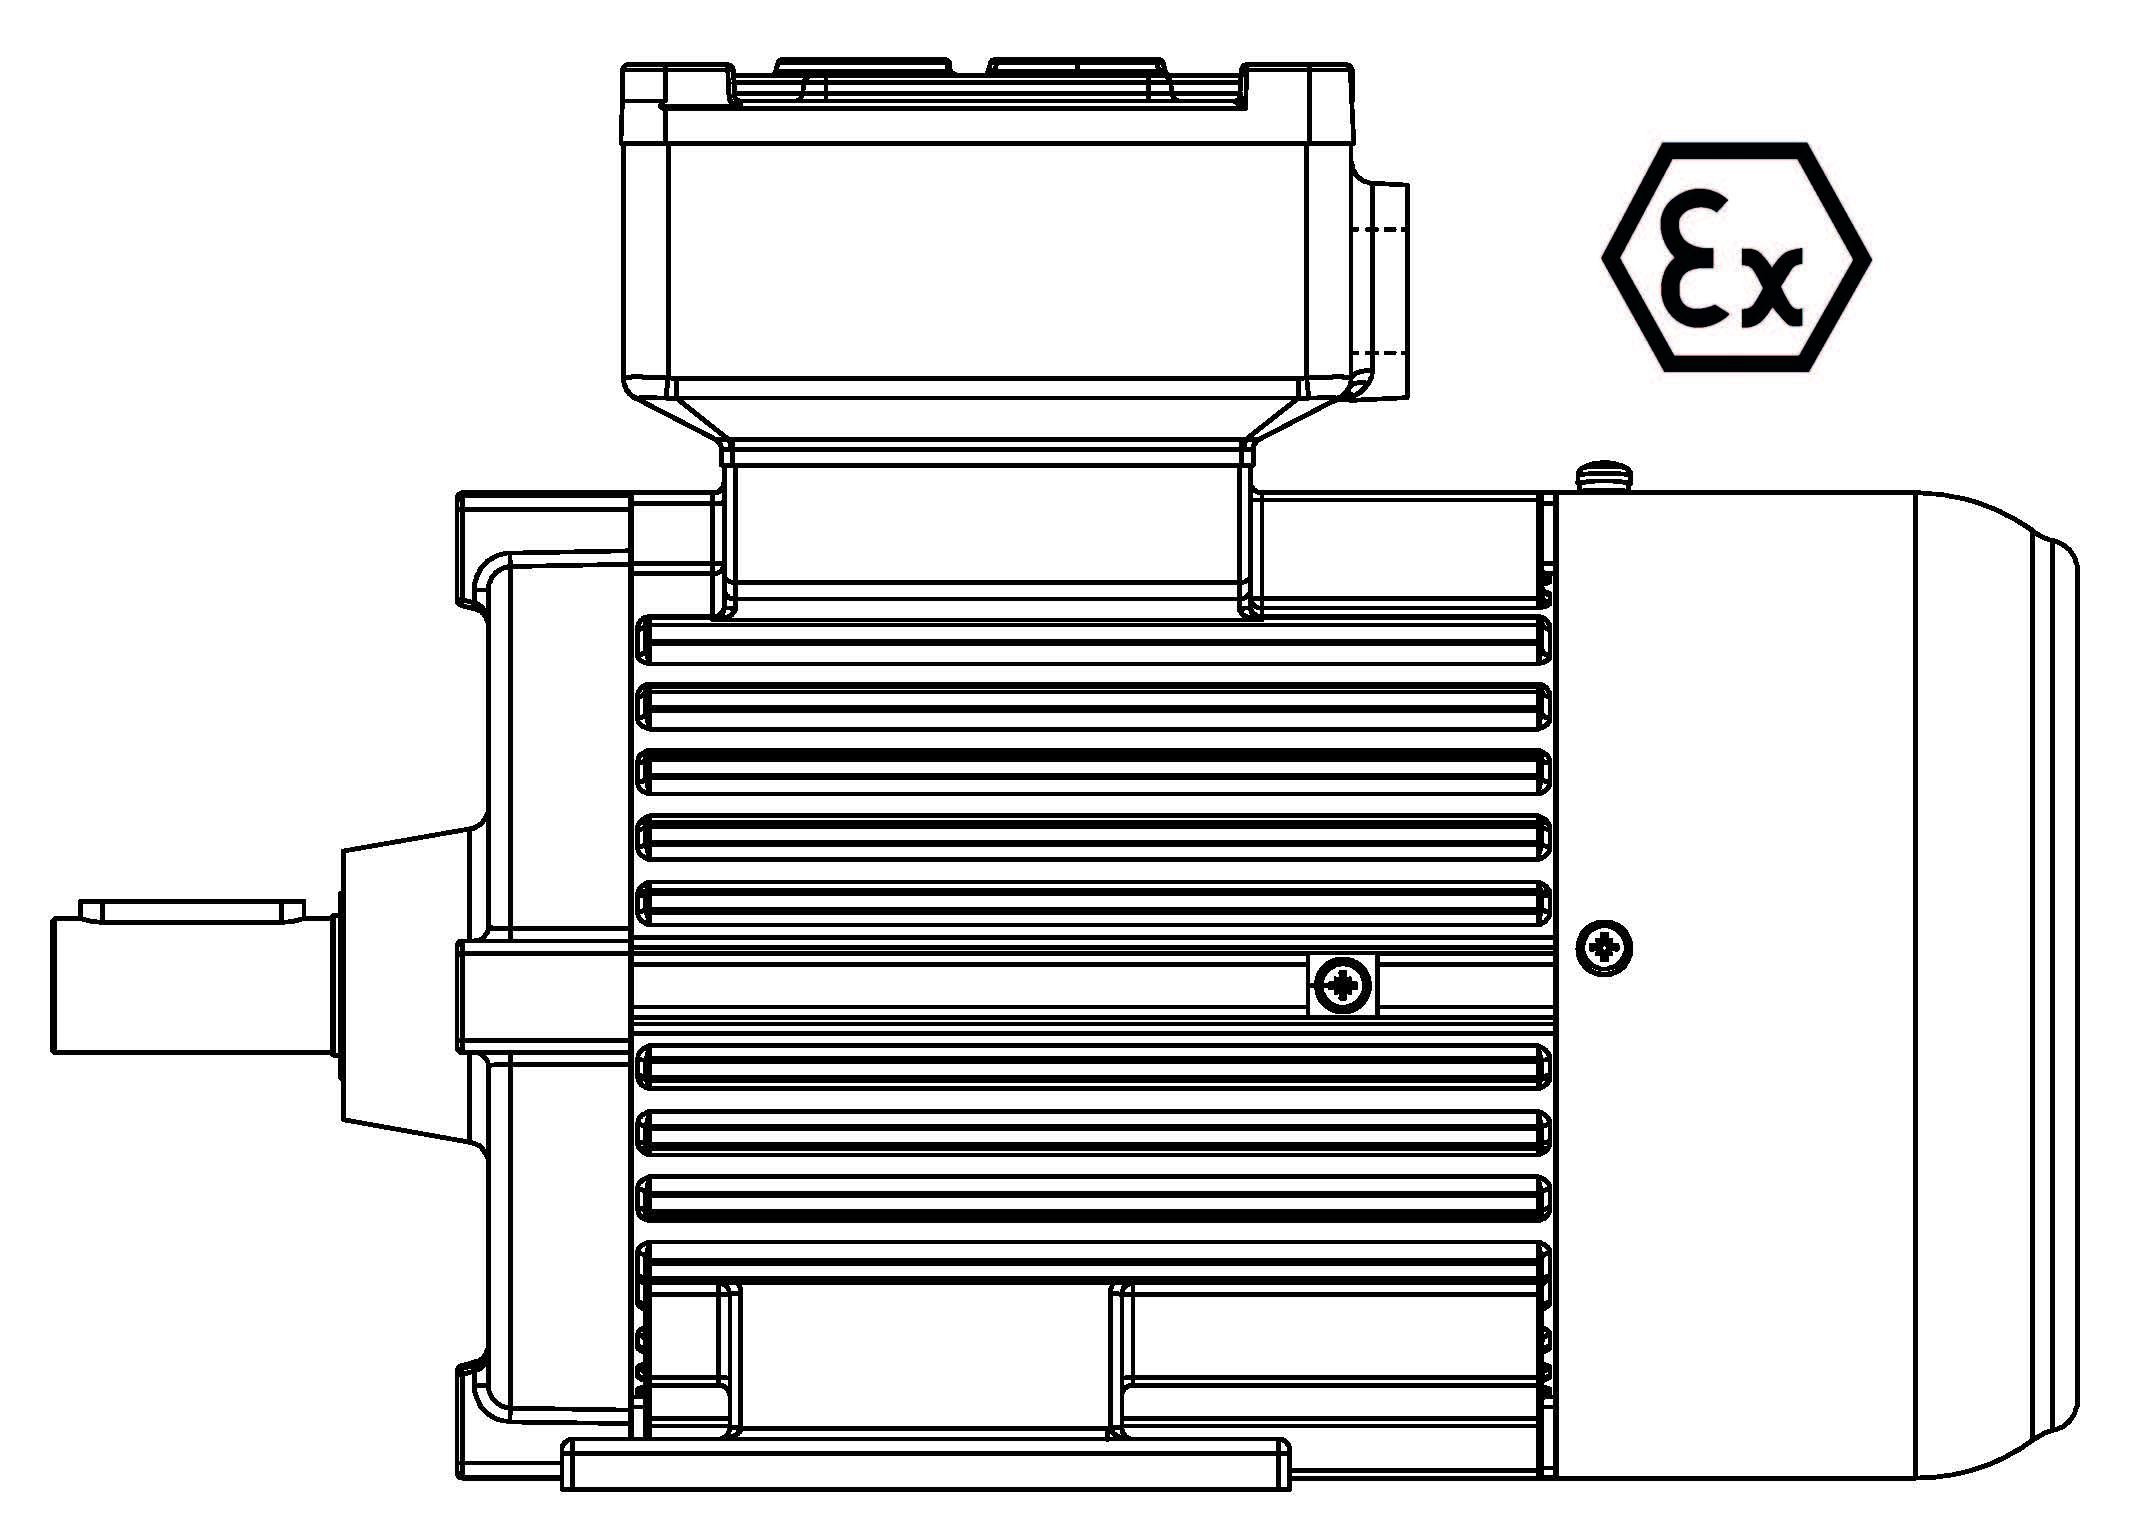 ATEX-200-2P 30 B3 400/3/50 Ex d IIB Эл.двигатель B3, разм. 200, 2900 об/мин, 30 кВт, 400 В, 3ф, 50 Гц